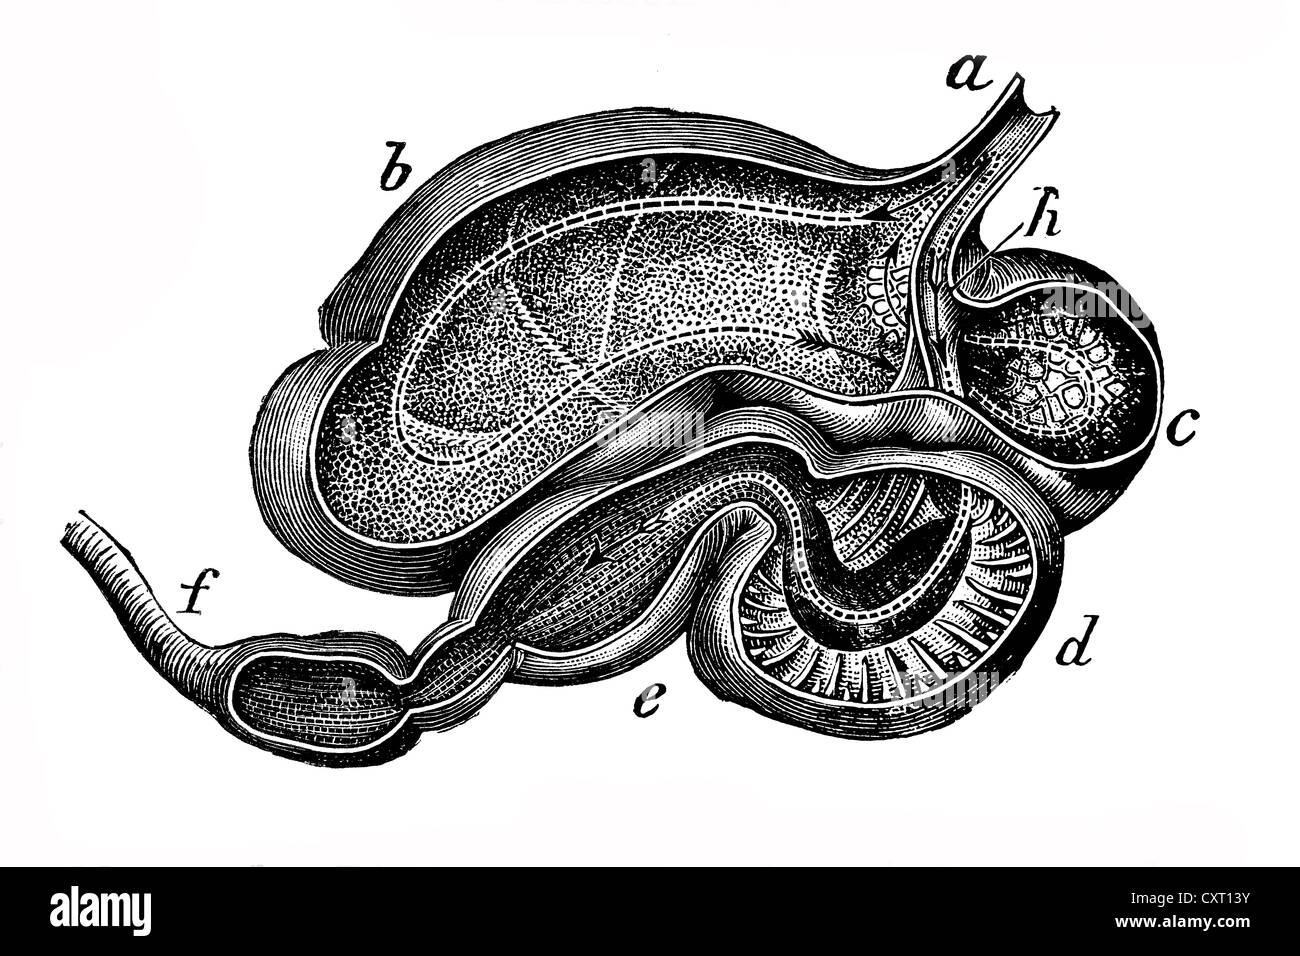 L'estomac de vache, illustration anatomique Banque D'Images